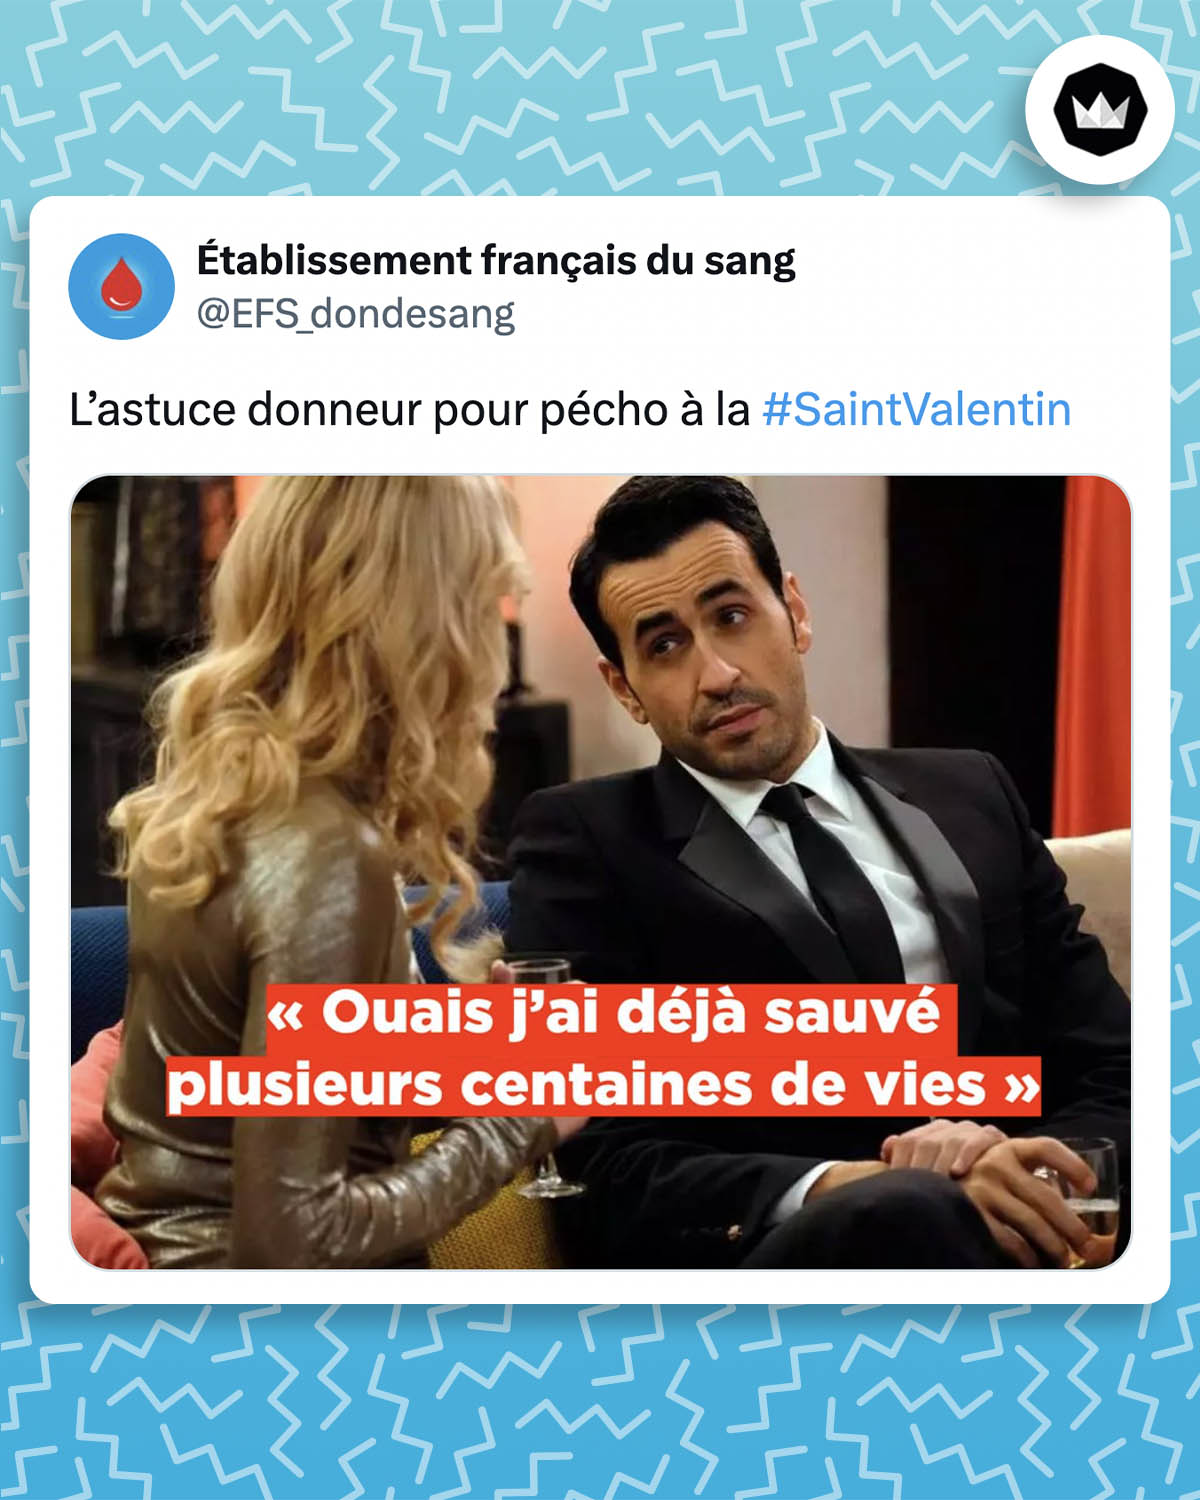 tweet de EFS_dondesang : 
"L’astuce donneur pour pécho à la #SaintValentin"
avec un screen de la série "La Flamme" où Marc dit "Ouais, j'ai déjà sauvé plusieurs centaines de vies"